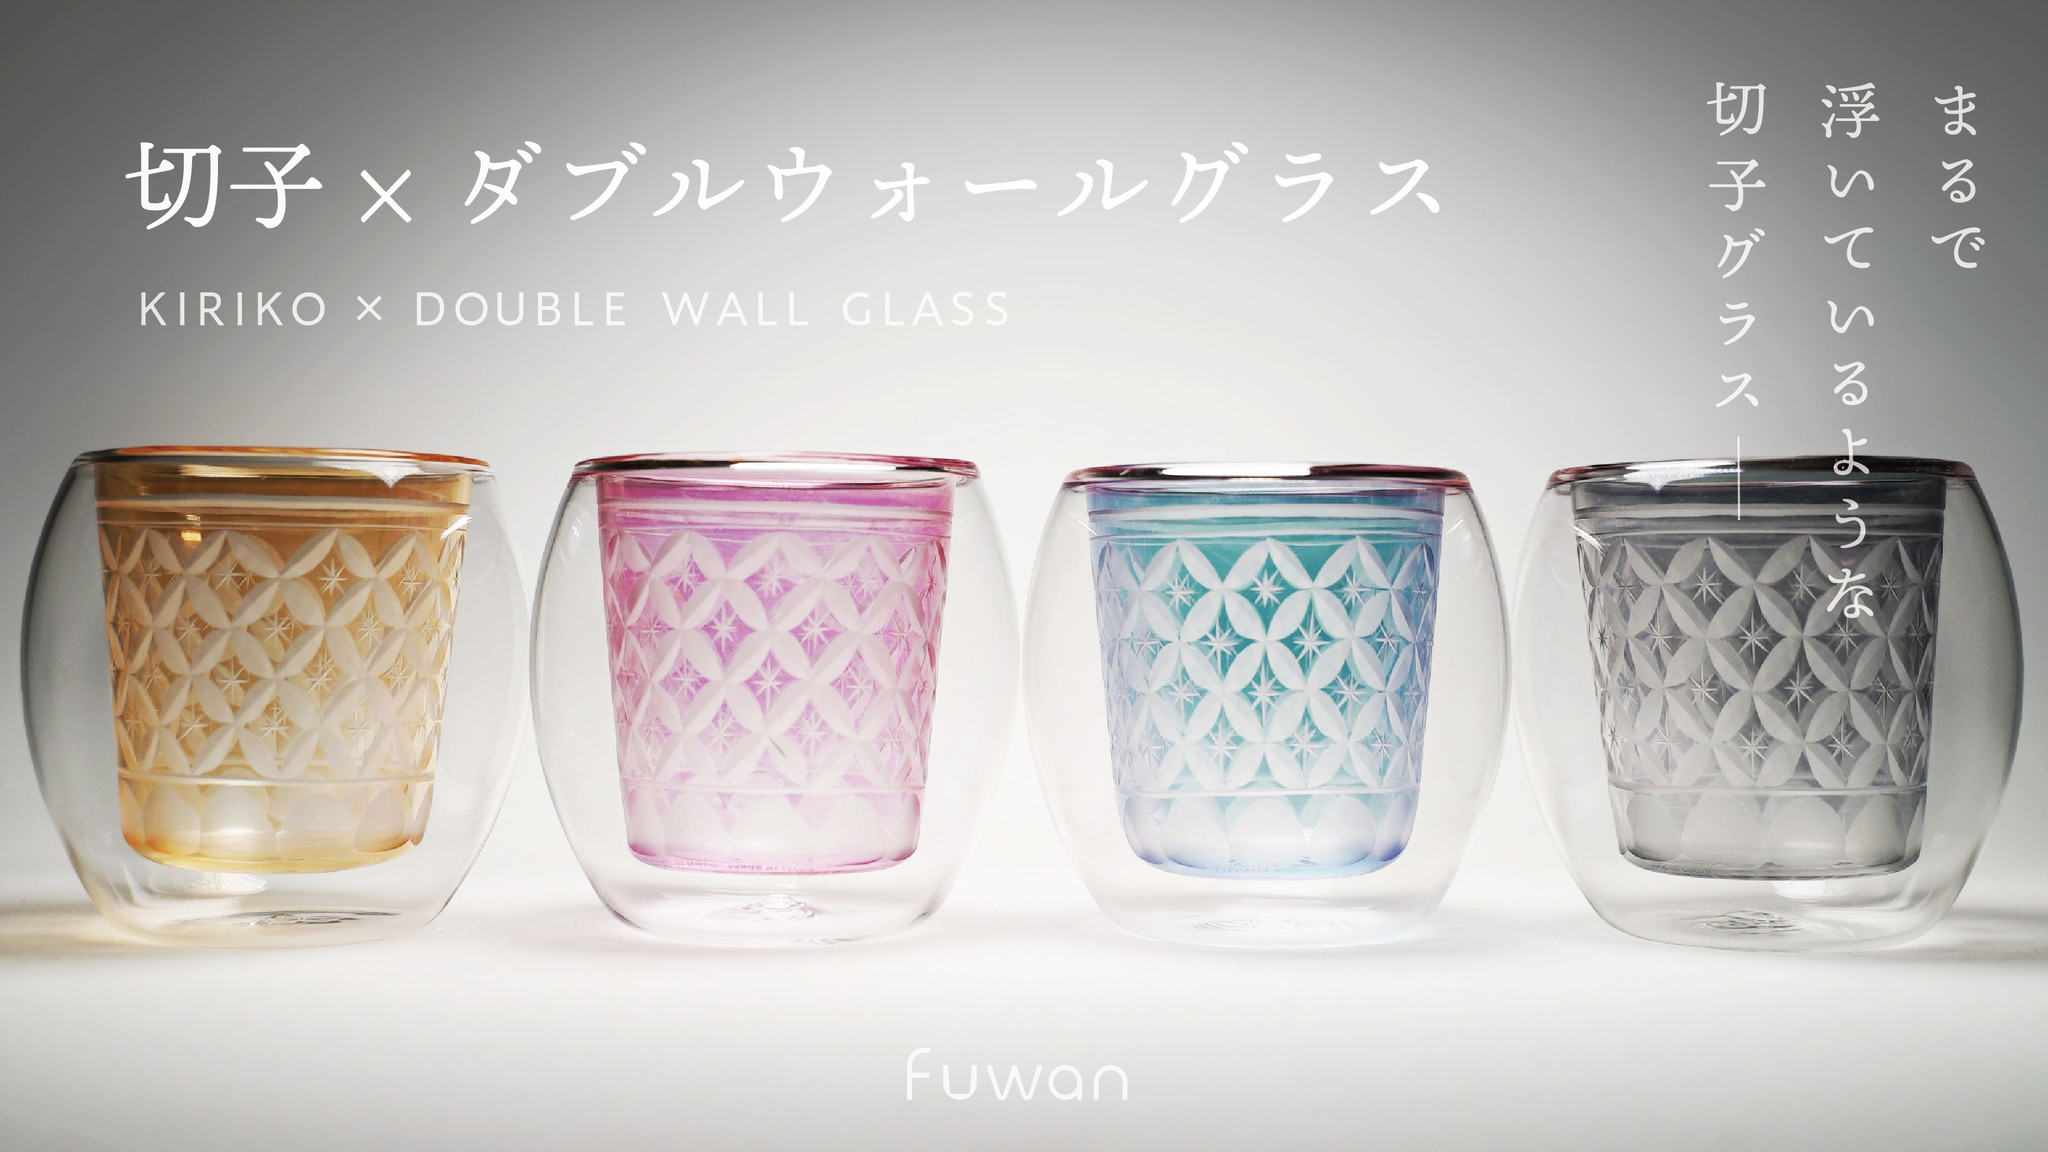 切子×ダブルウォールグラス「Fuwan-浮碗-」切子の美しさと機能を兼ね 